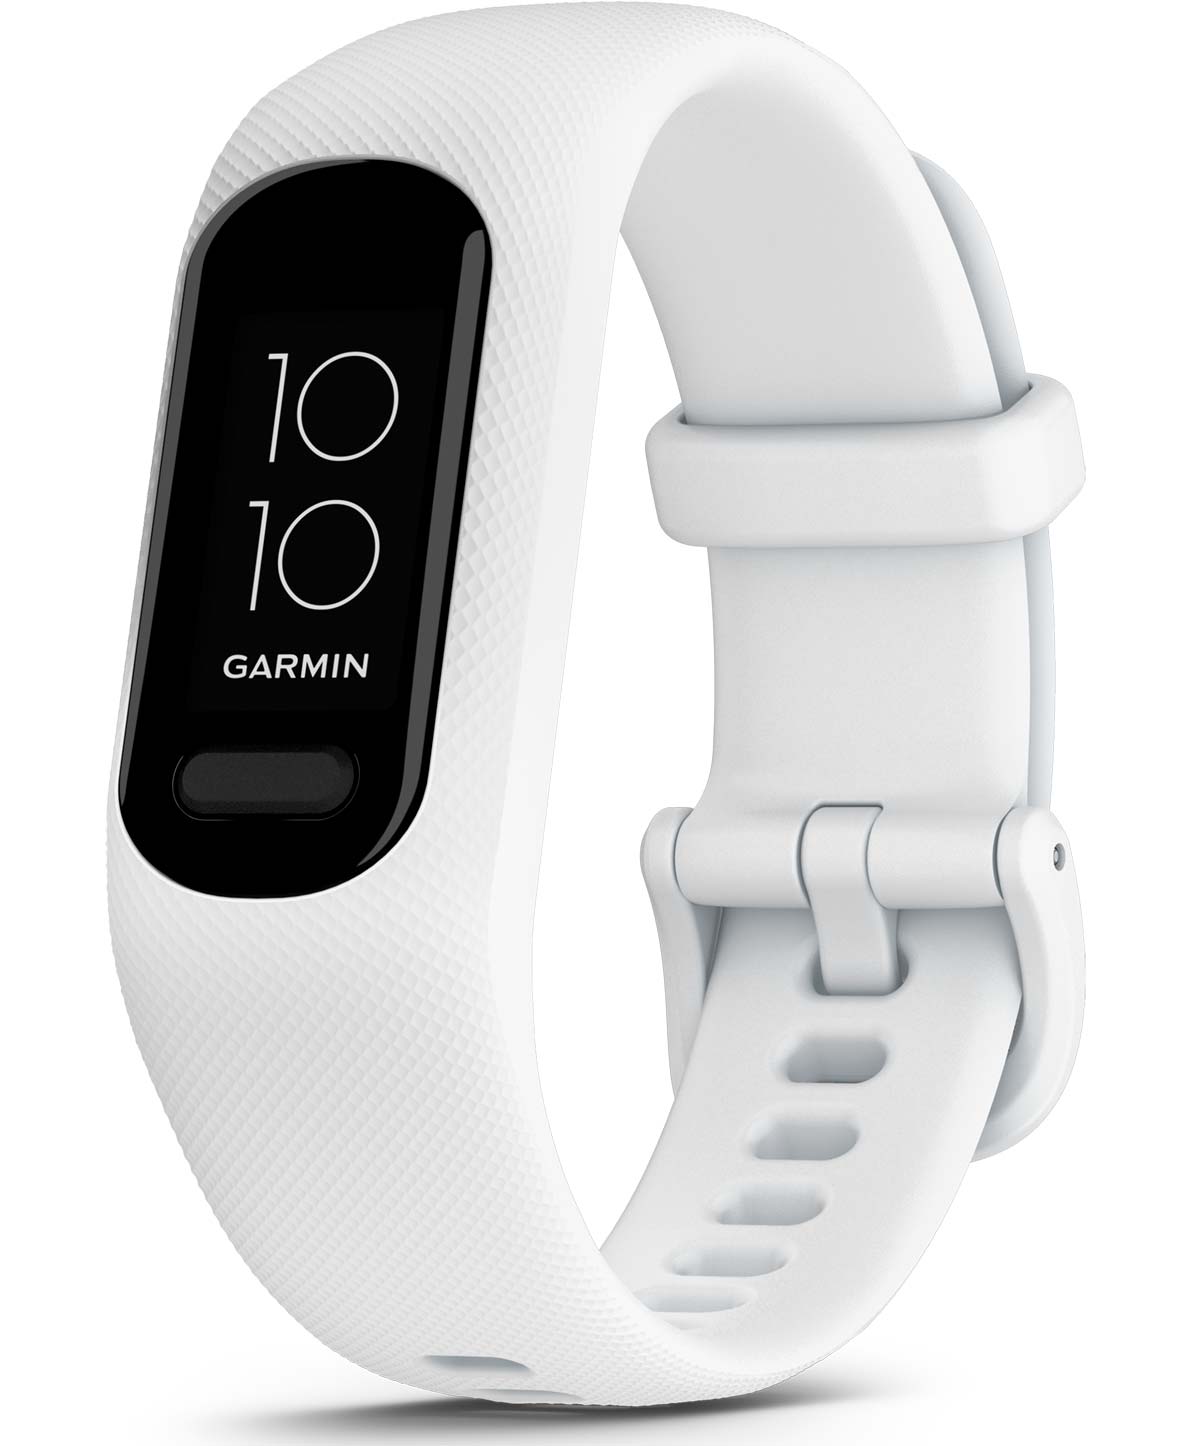 En TodoMountainBike: Garmin presenta la Vívosmart 5 con un diseño renovado y nuevas funciones inteligentes